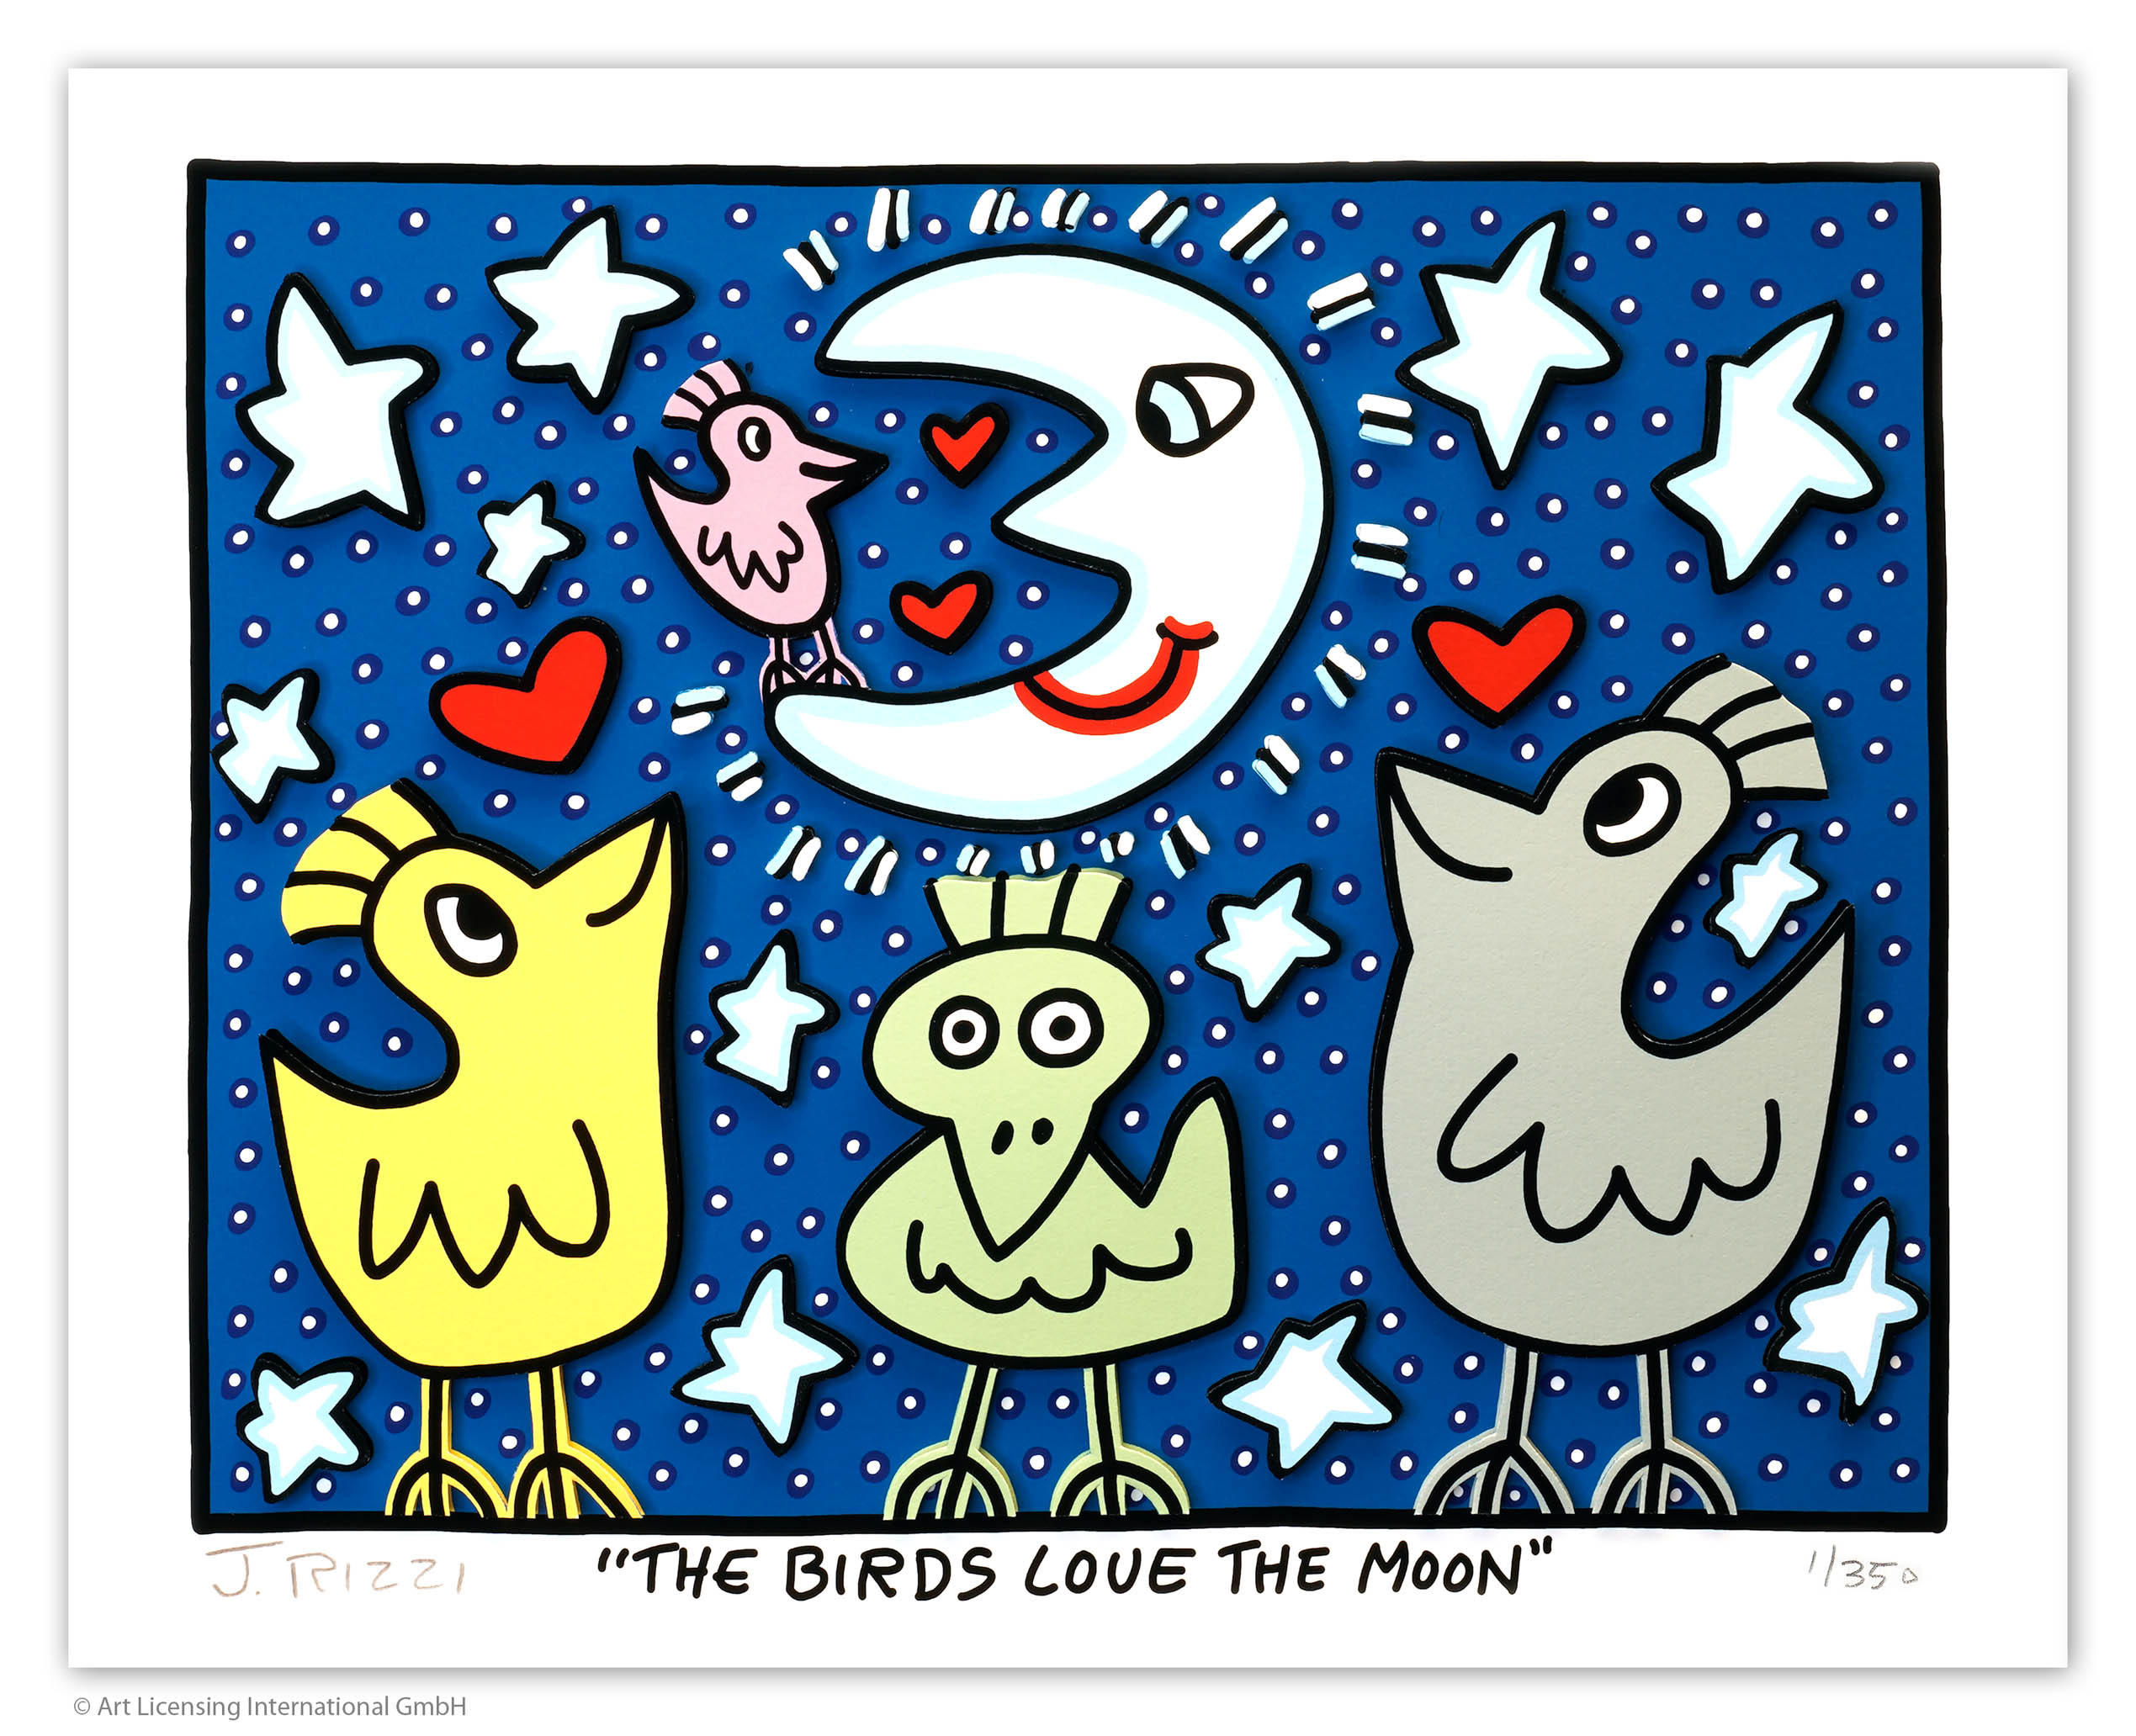 The Birds Love the Moon